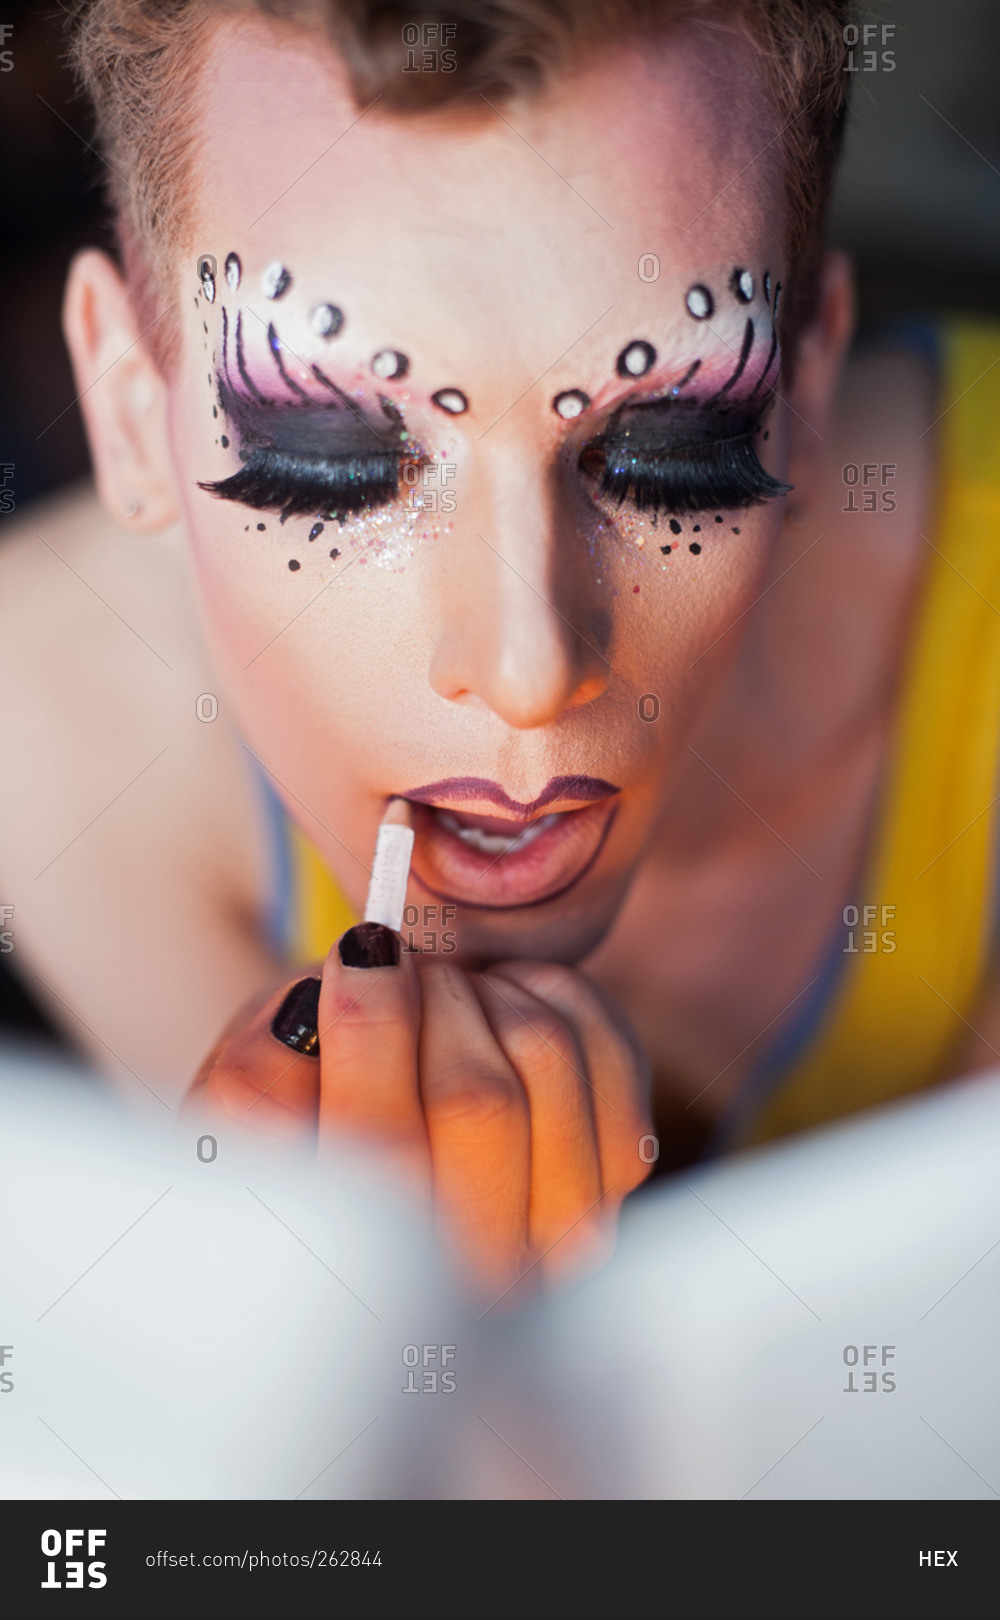 drag queen makeup essentials